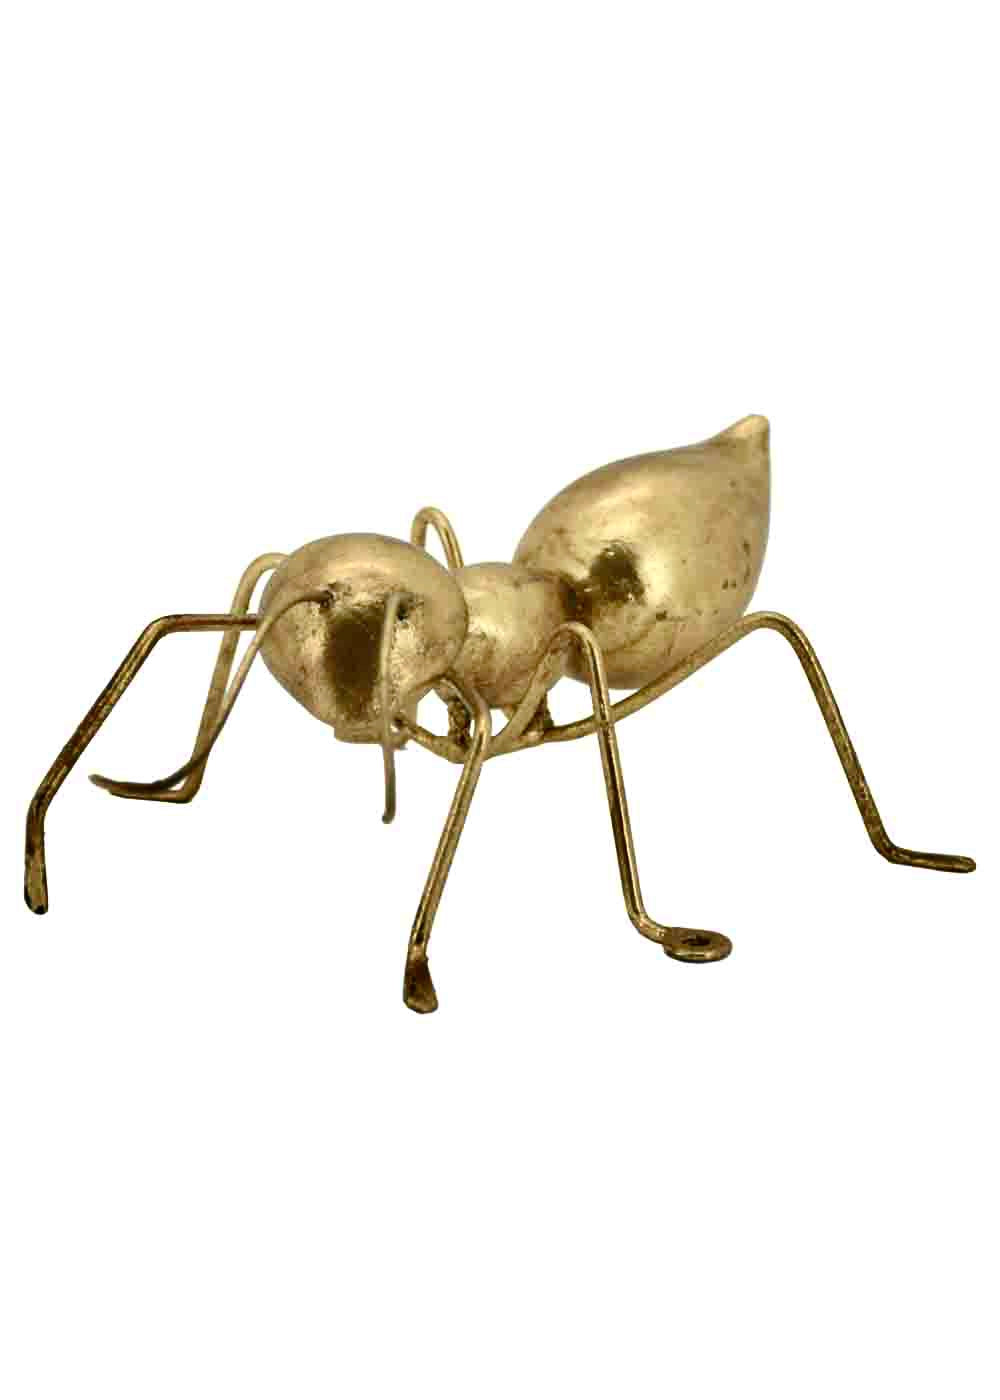 Giant Ant Decor